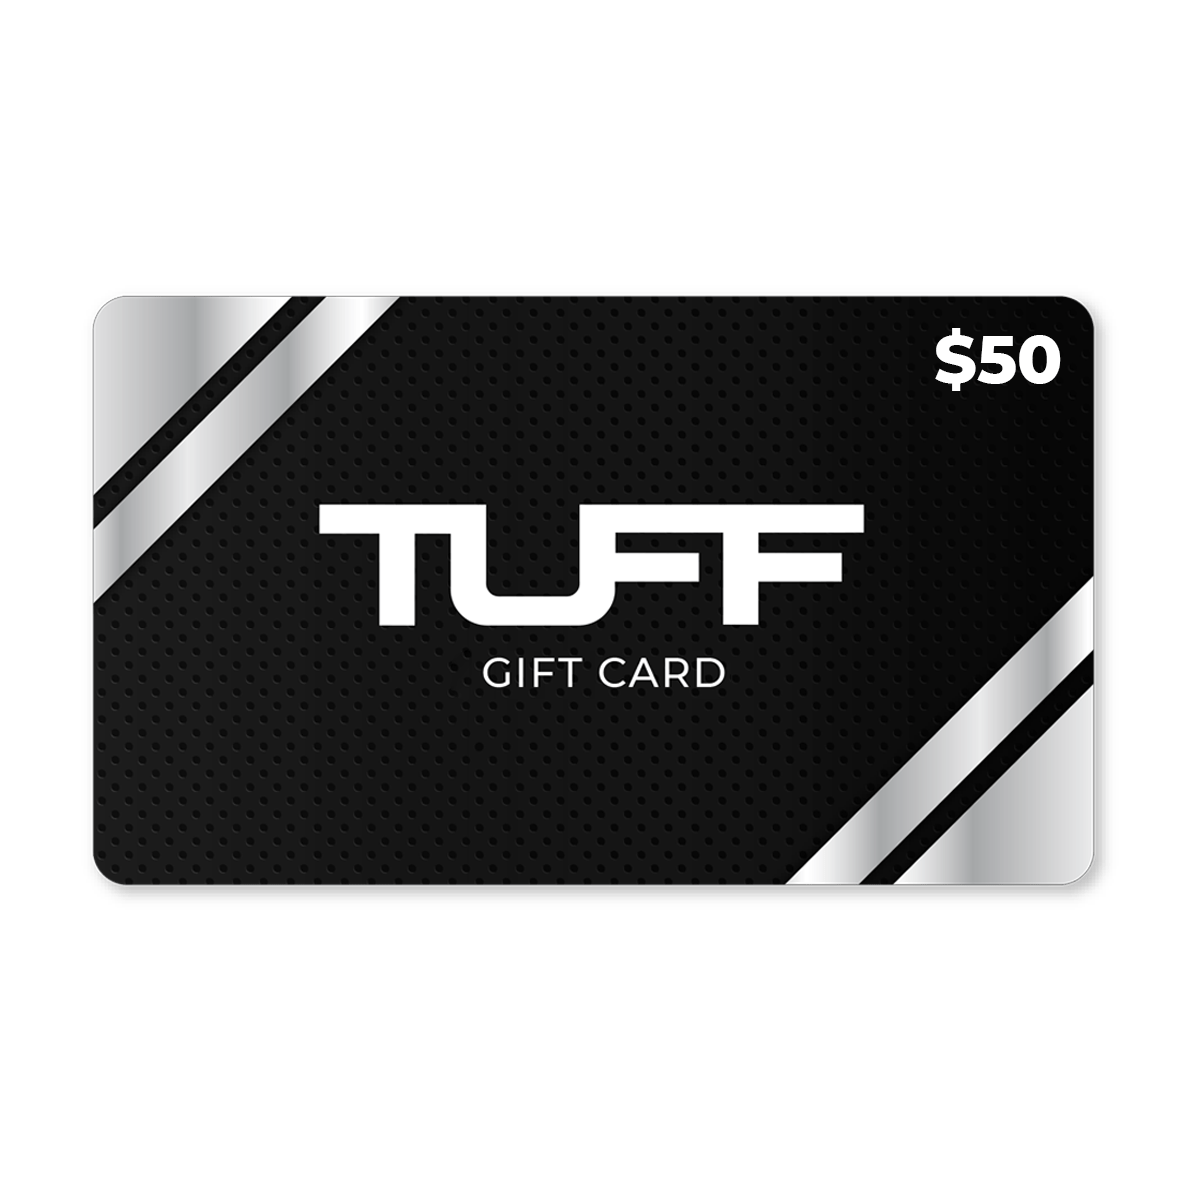 TuffWraps Gift Card $50.00 TUFF Gift Card